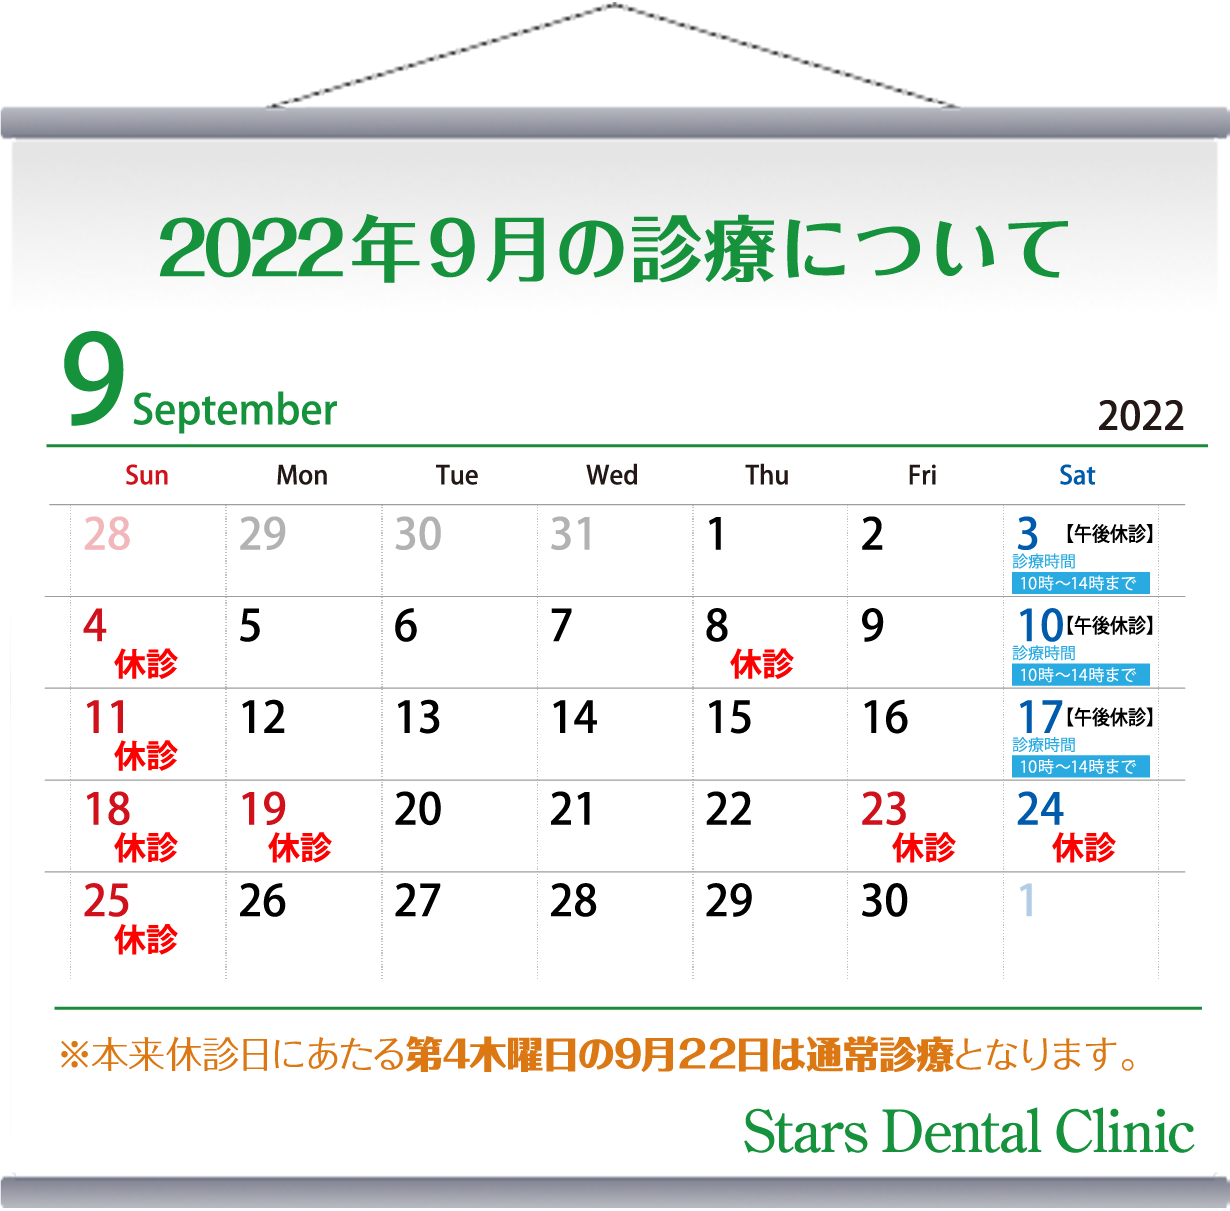 2022年9月の診療について